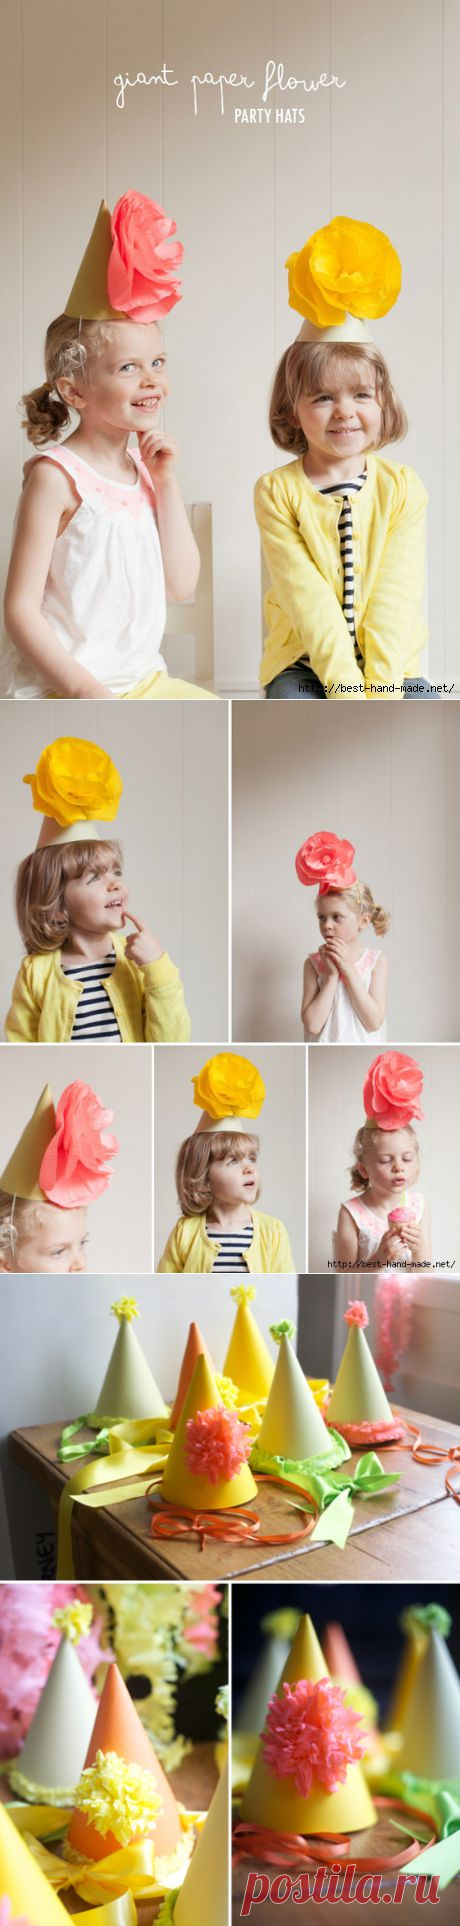 Конусные шляпки для праздника с цветочным декором:) Шаблон и мастер-класс